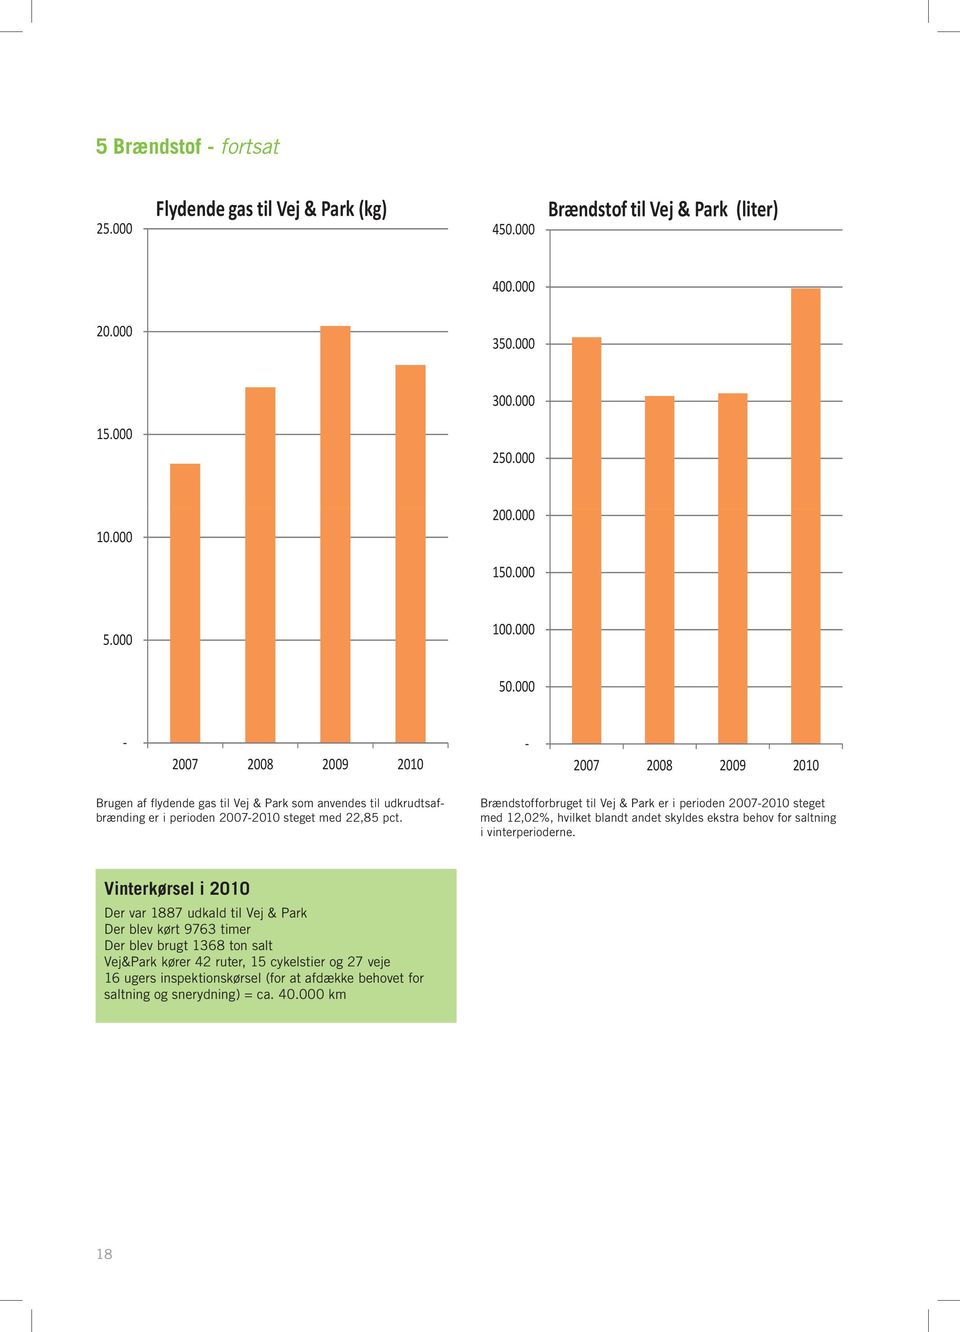 Brændstofforbruget til Vej & Park er i perioden 2007-2010 steget med 12,02%, hvilket blandt andet skyldes ekstra behov for saltning i vinterperioderne.